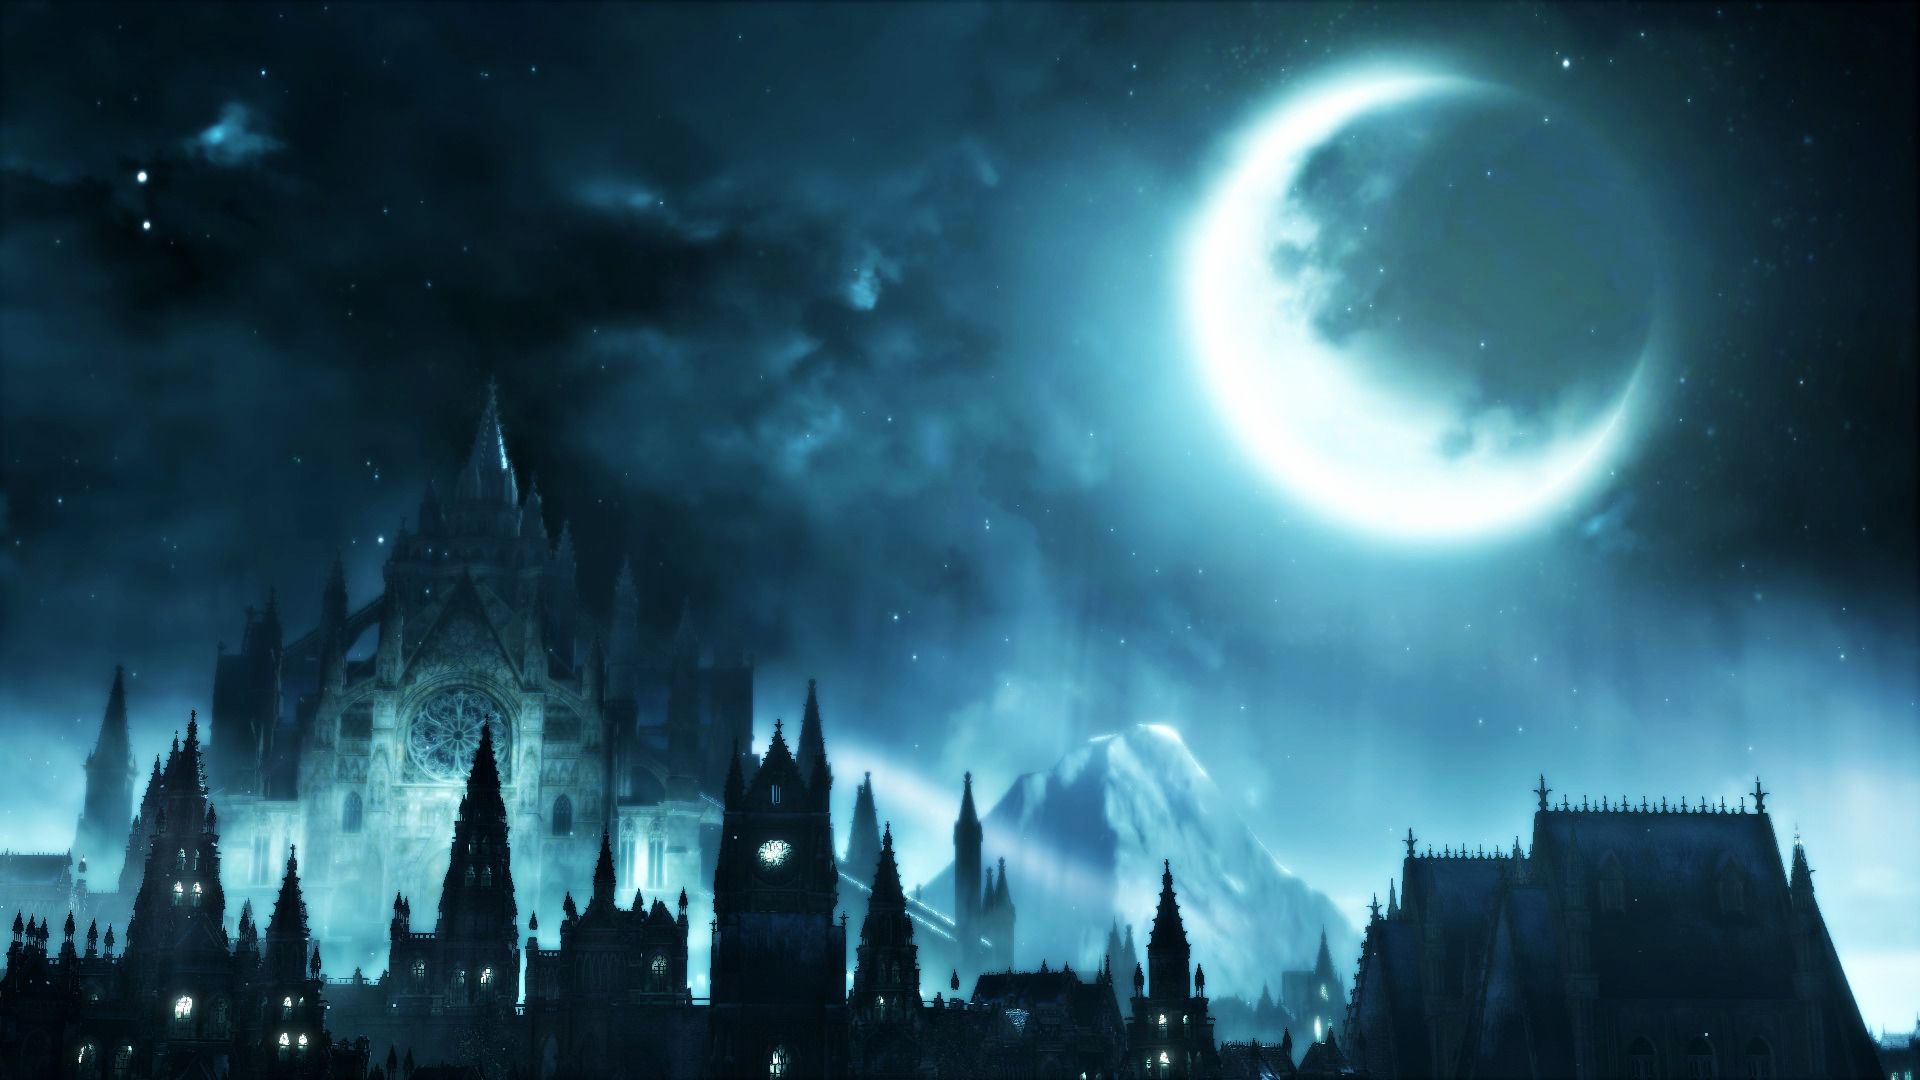 Dark Souls III, Video games, Moon, Dark, Castle Wallpaper HD / Desktop and Mobile Background